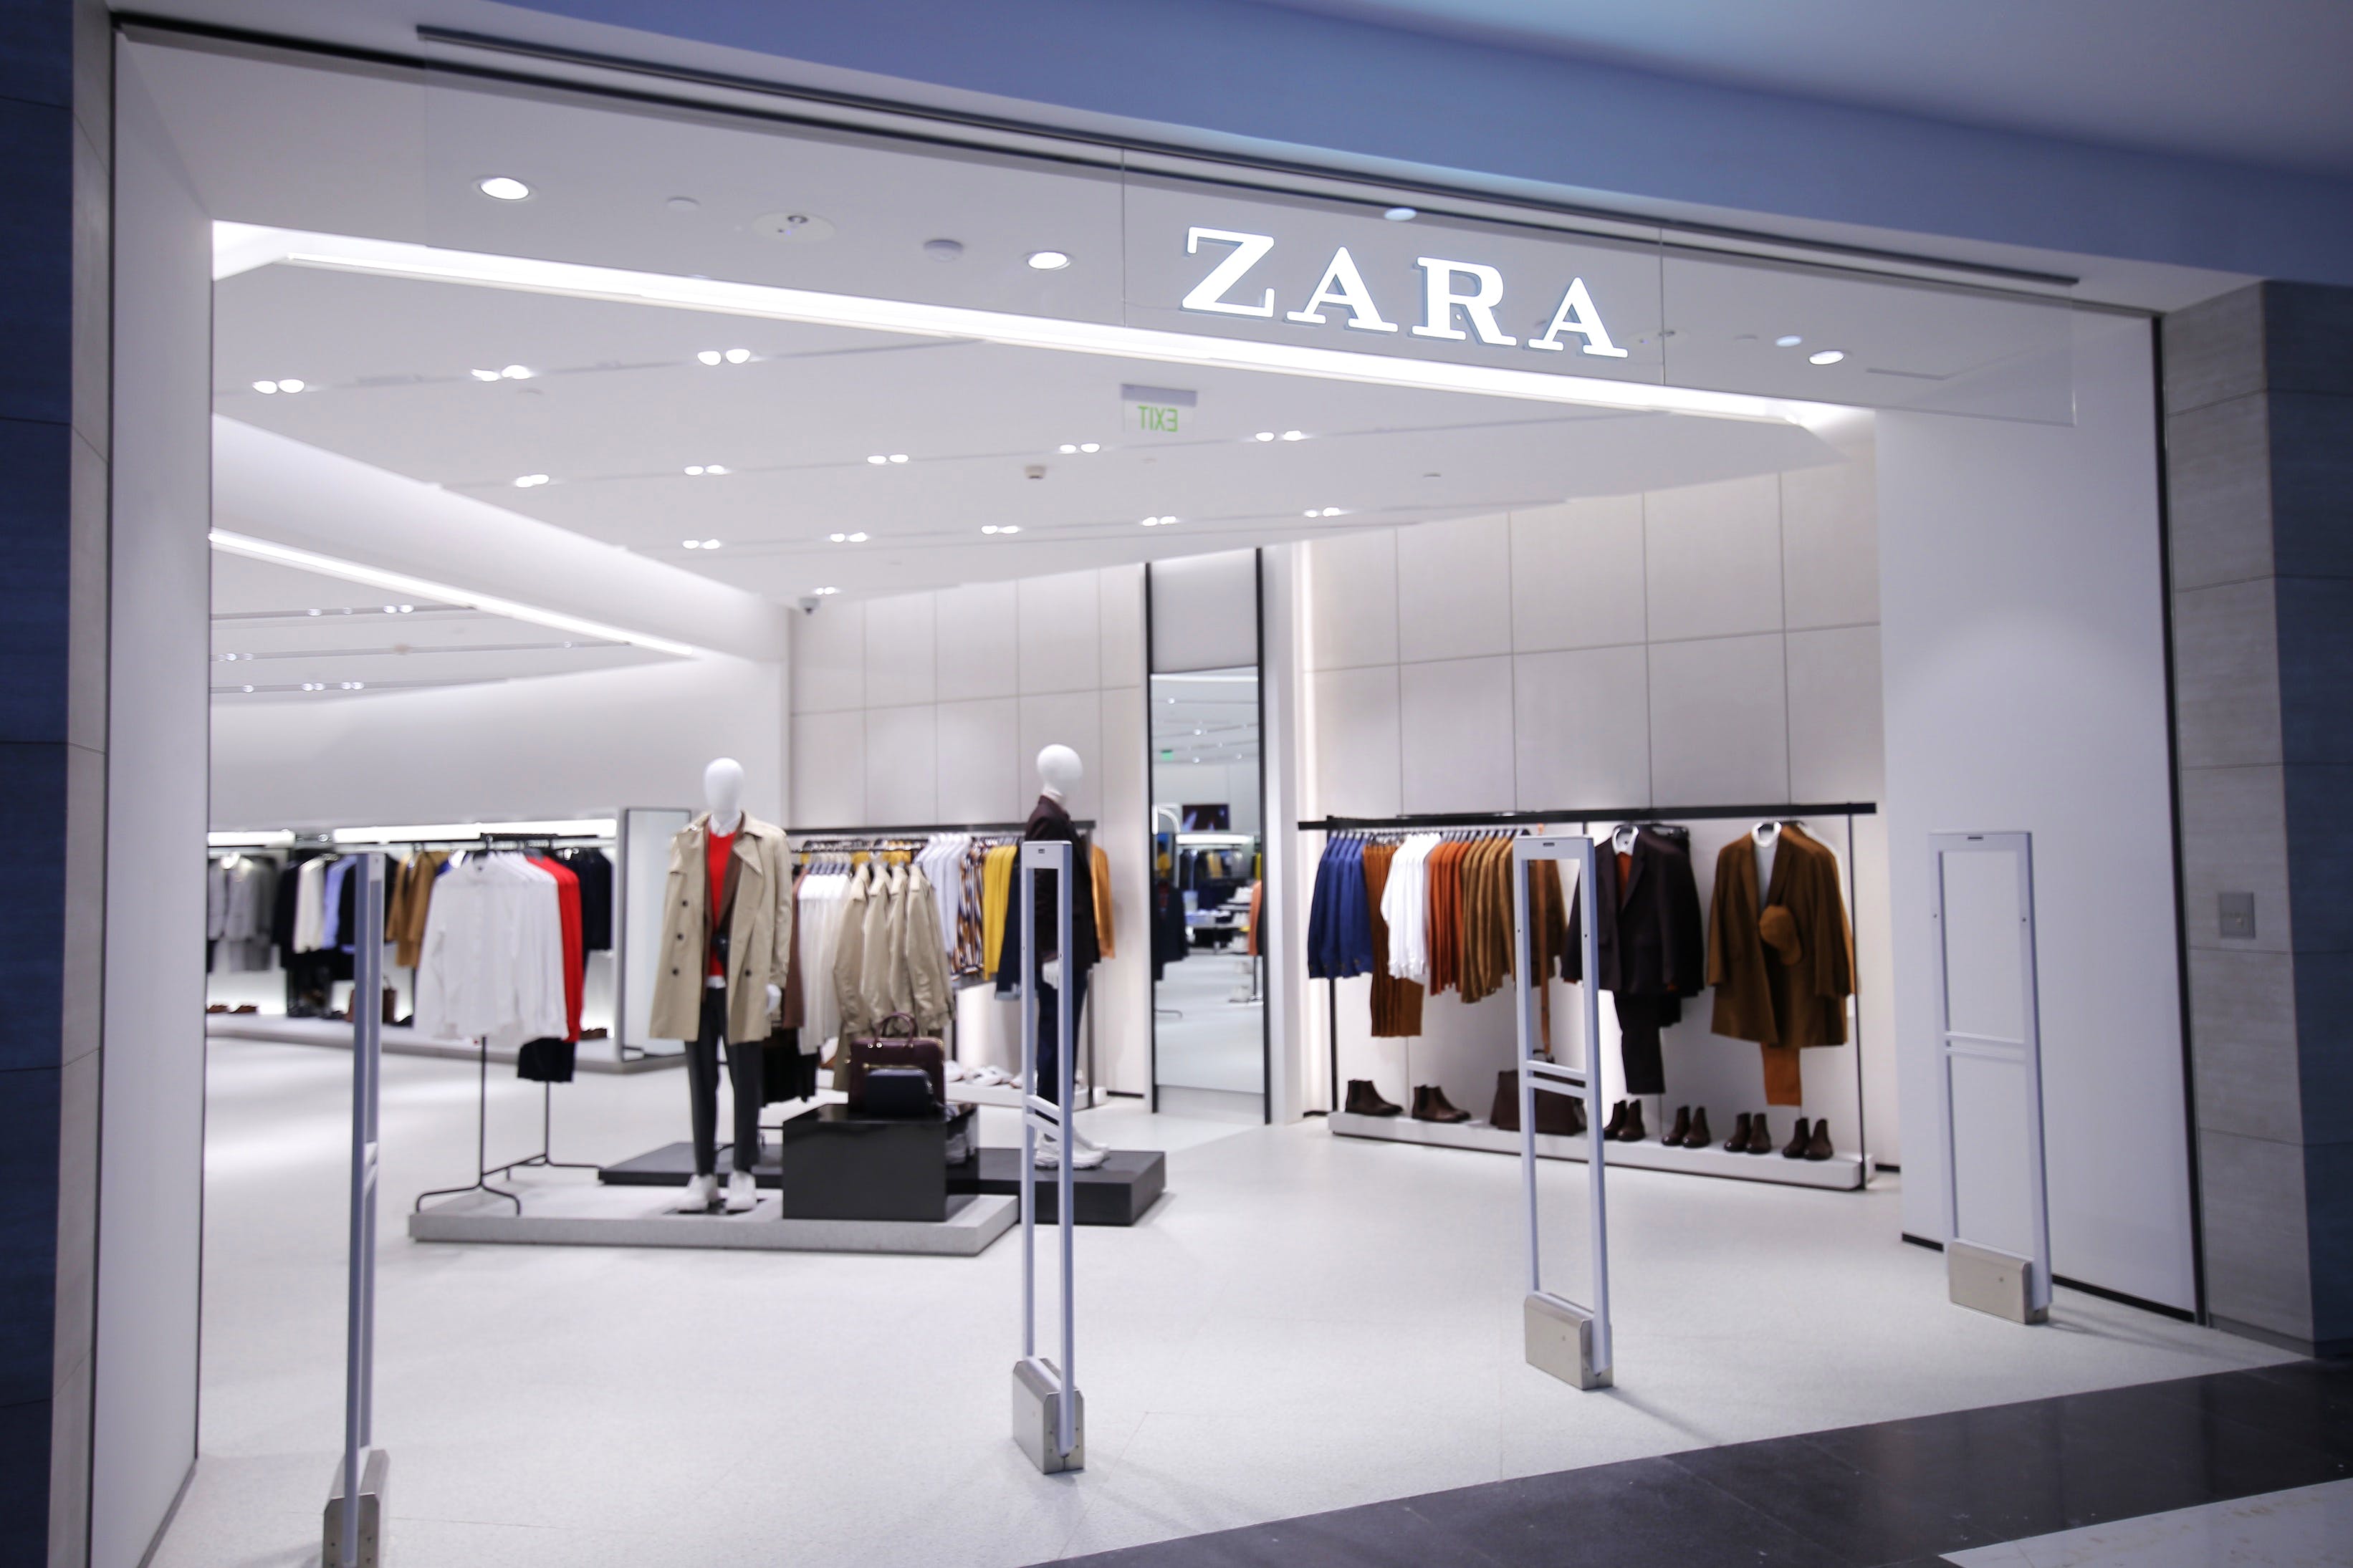 zara brand details